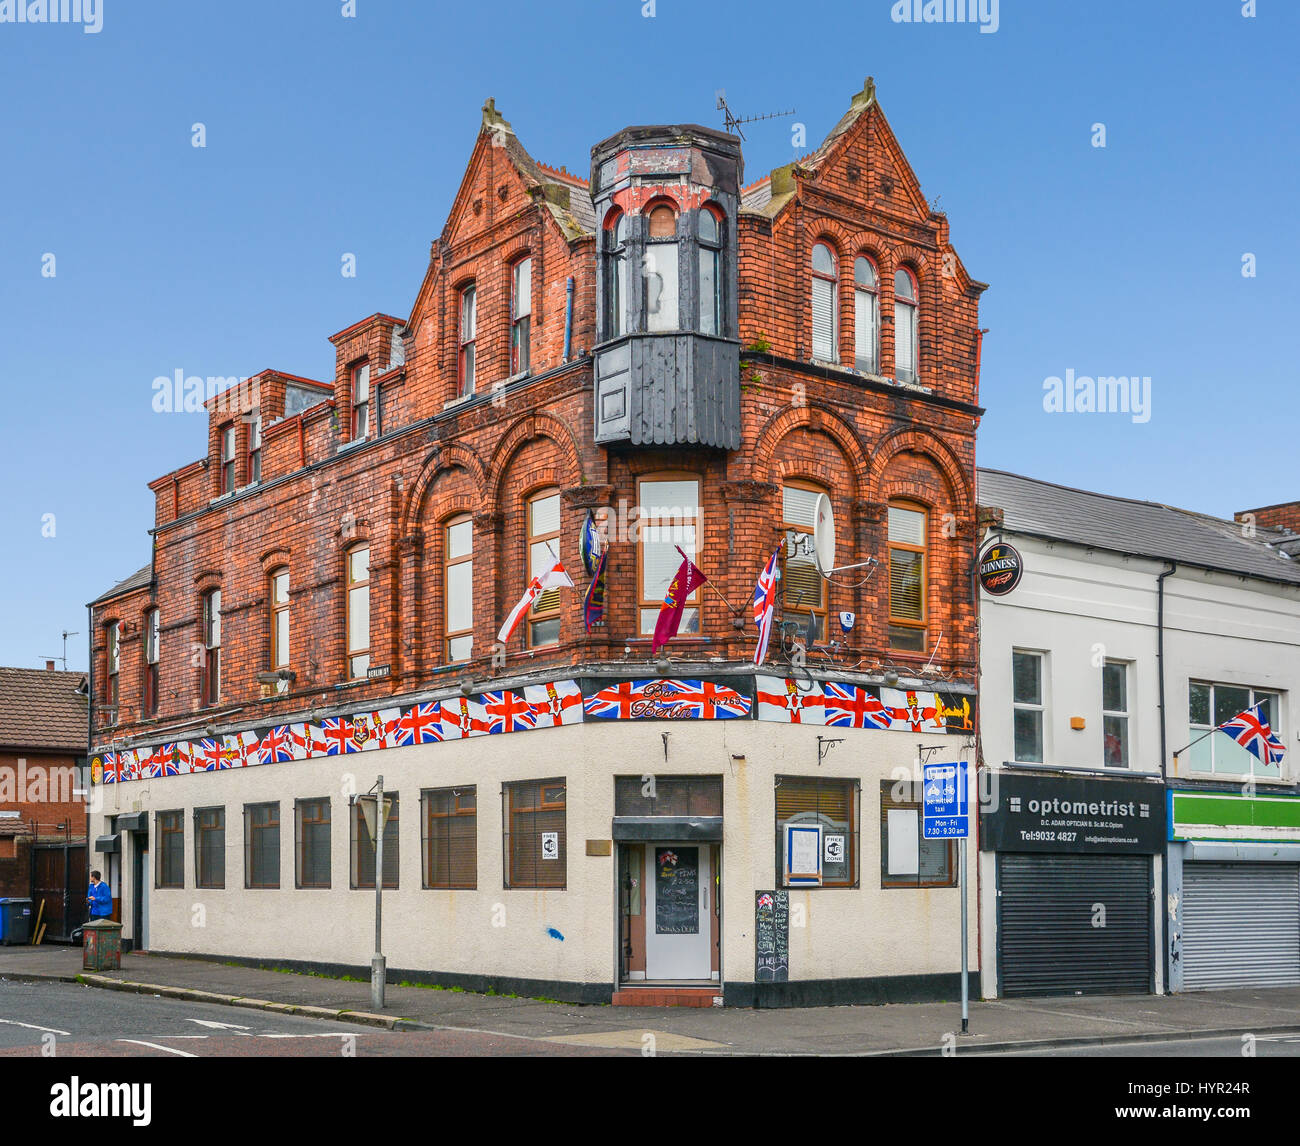 Maison de brique avec drapeaux britanniques près de Shankill Road, à Belfast, en Irlande du Nord Banque D'Images